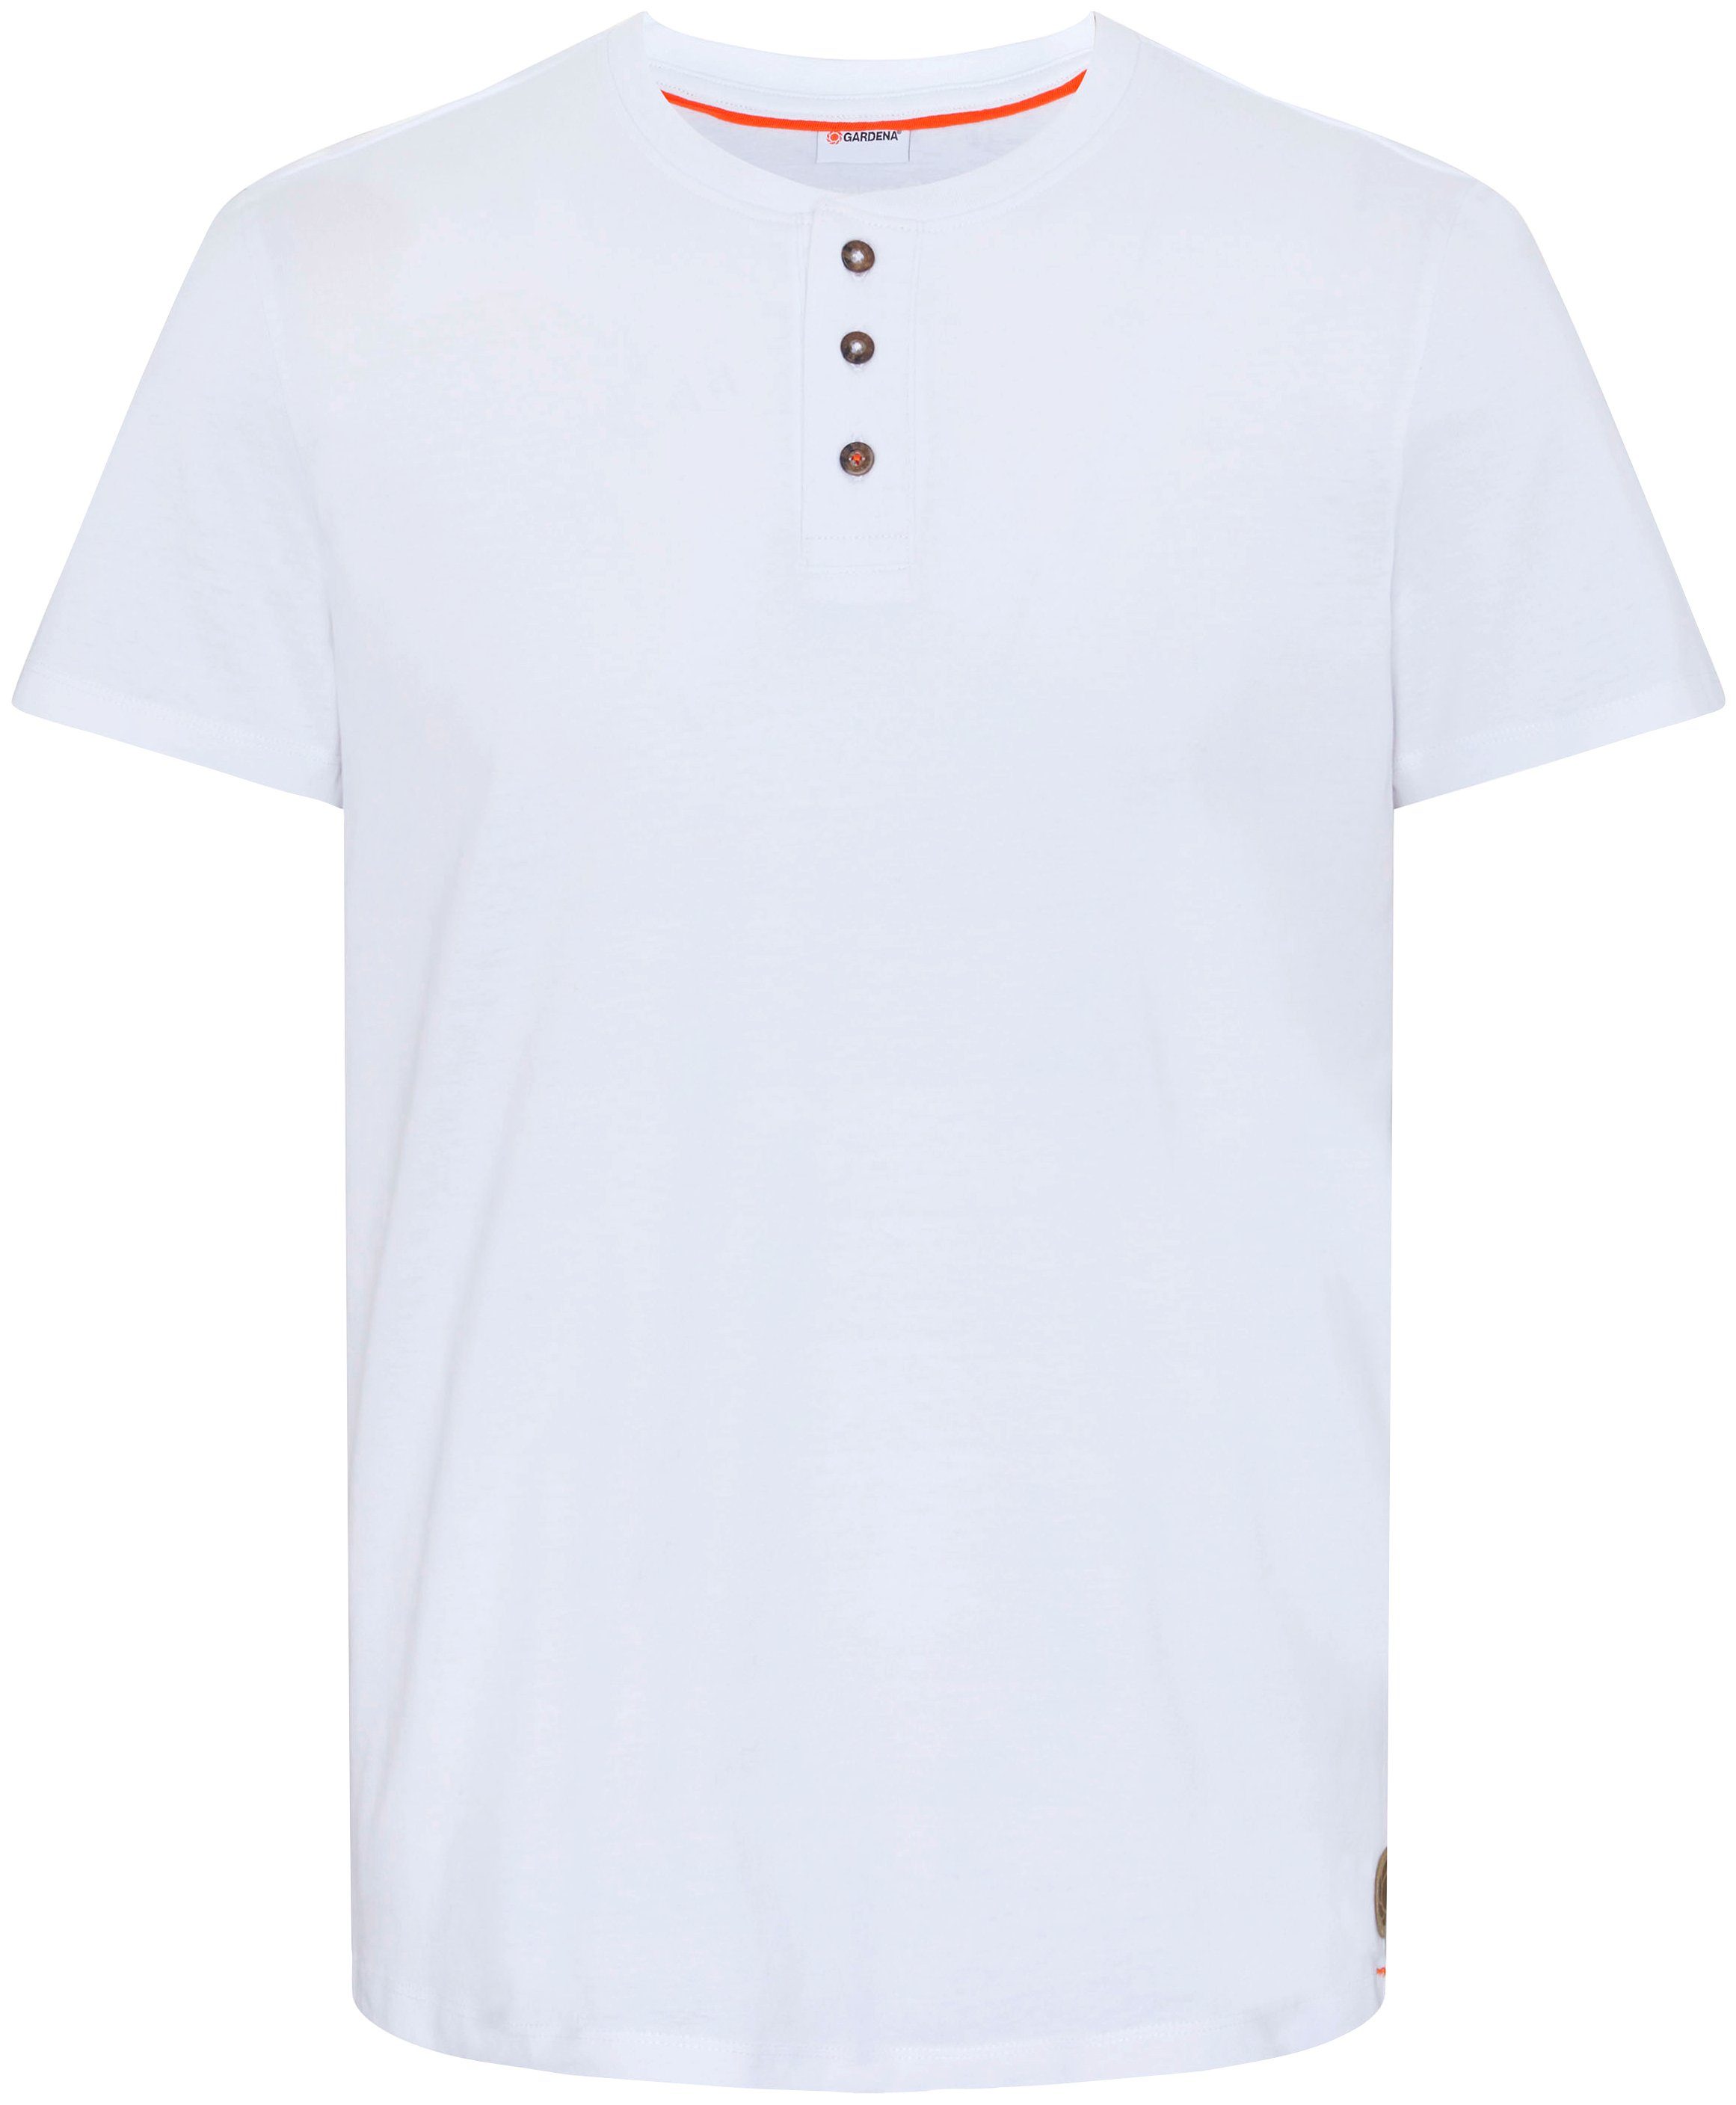 GARDENA T-Shirt Bright White mit Knopfleiste